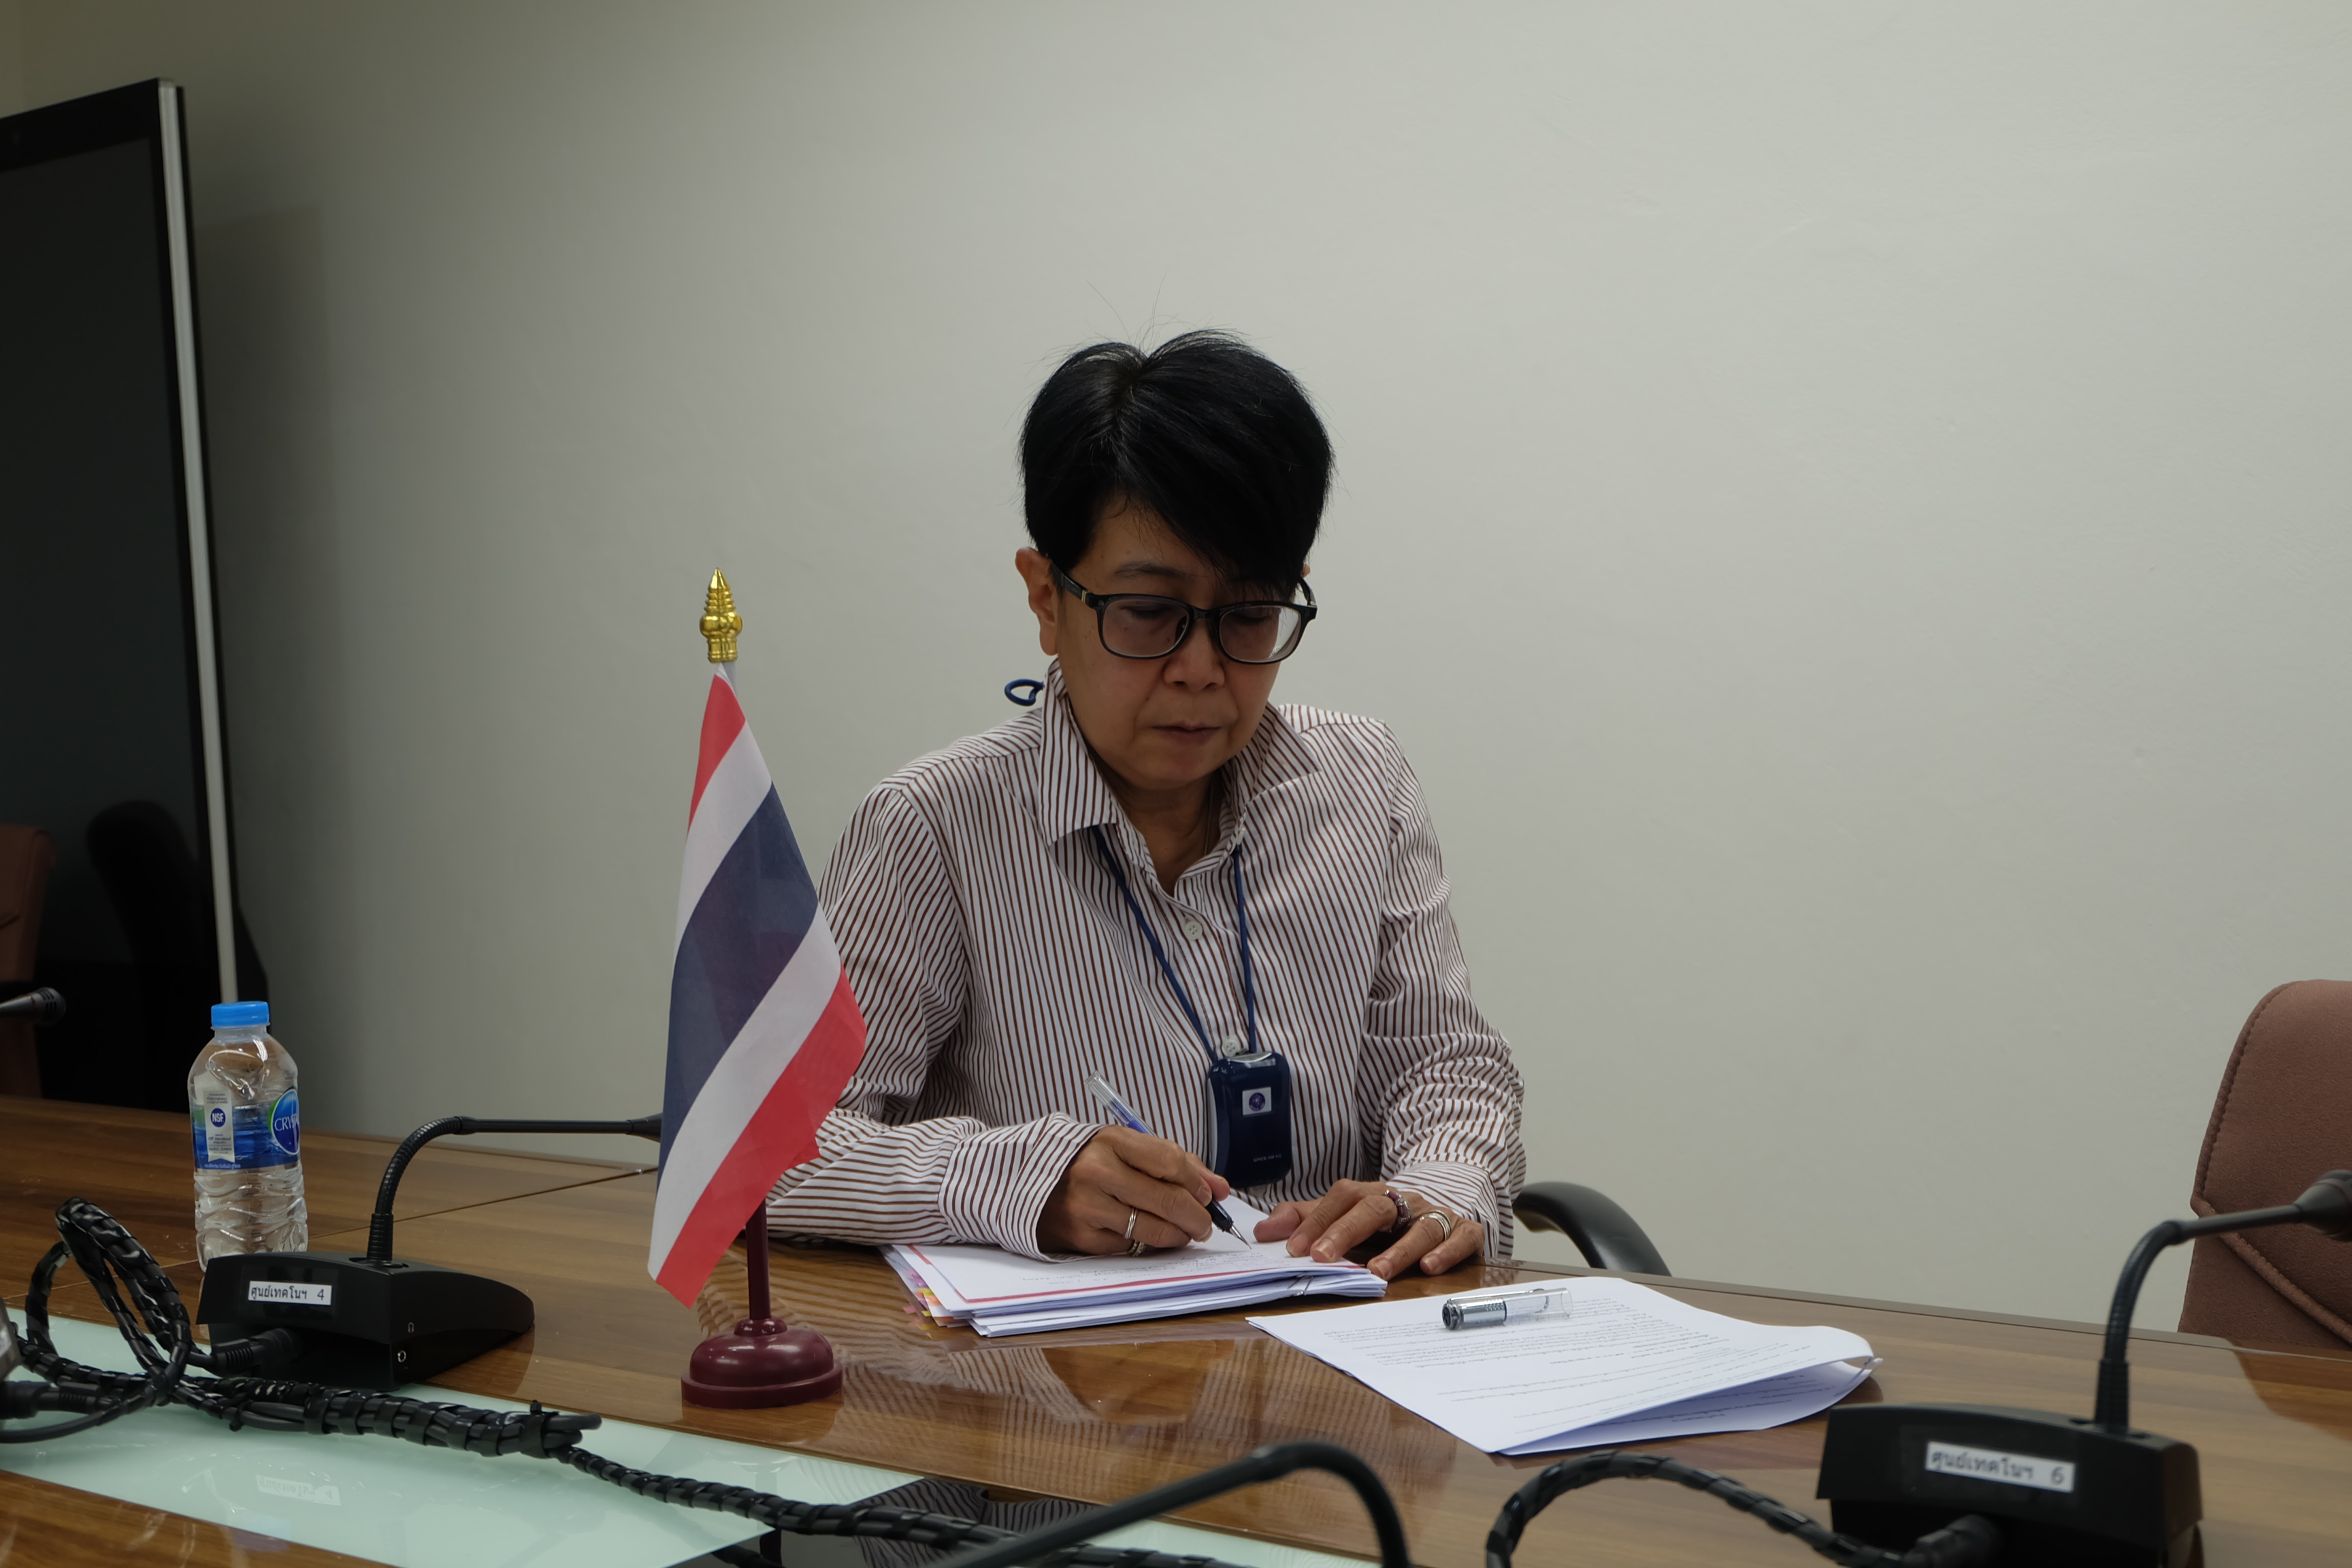 นางสาวนิธิวดี หอมแย้ม นักวิเทศสัมพันธ์ชำนาญการ เข้าร่วมประชุมในฐานะตัวแทนผู้สังเกตการณ์จากประเทศไทย